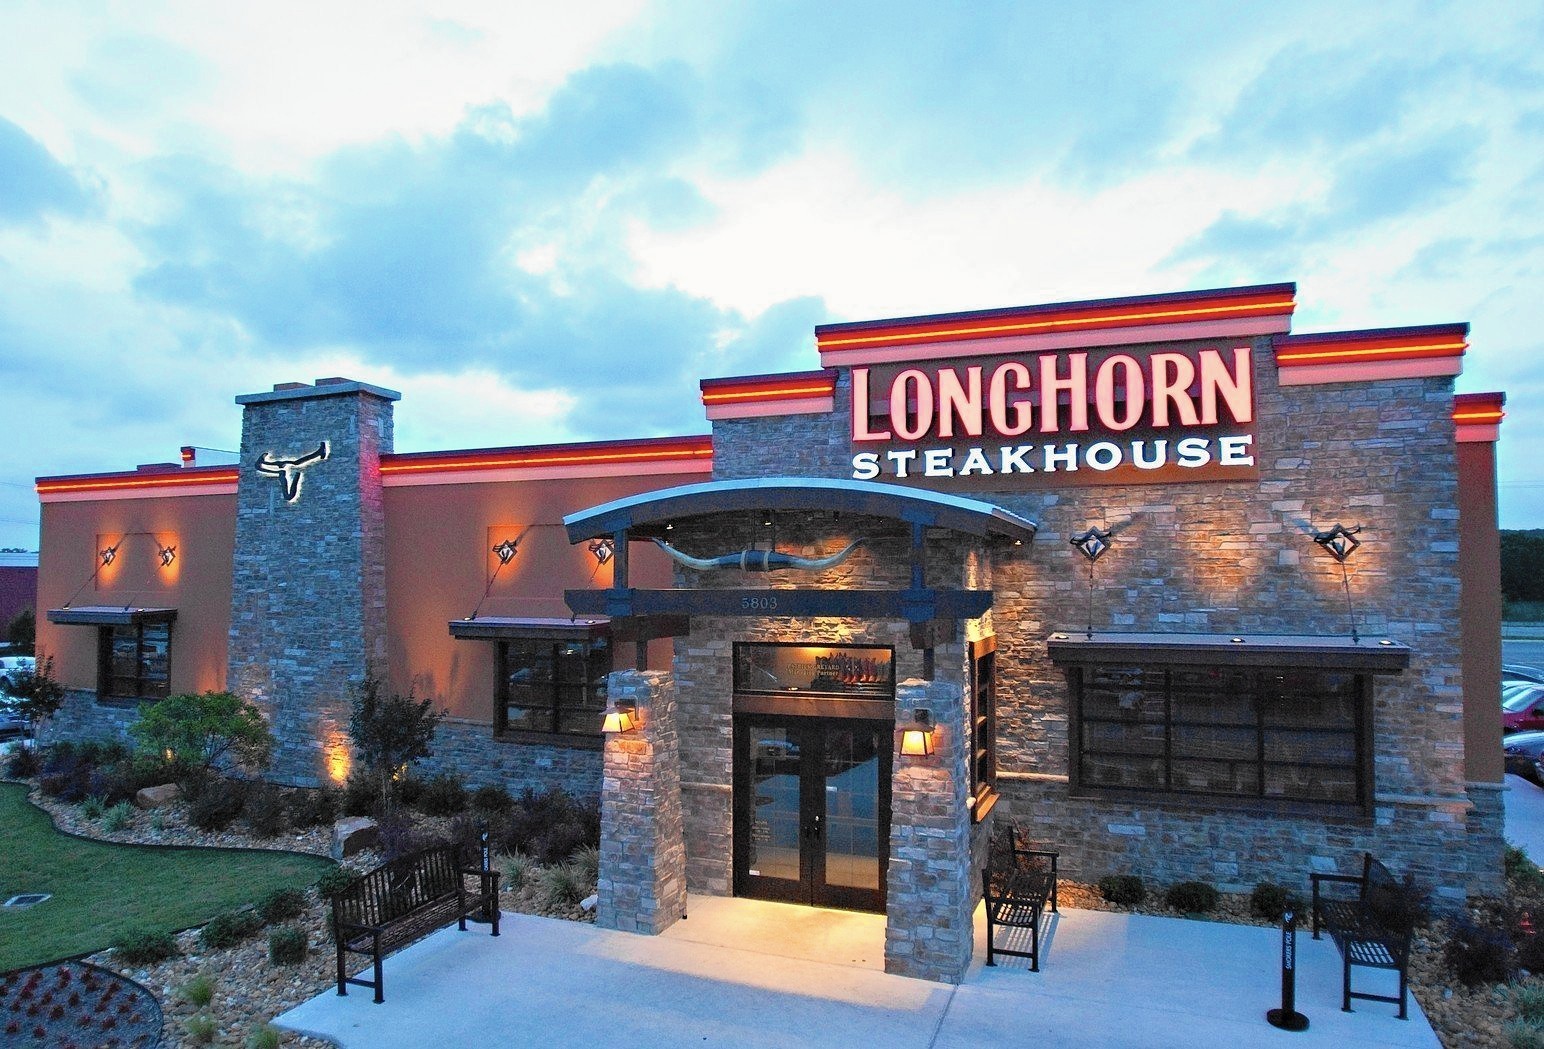 New steakhouse to open in Oswego - Aurora Beacon-News